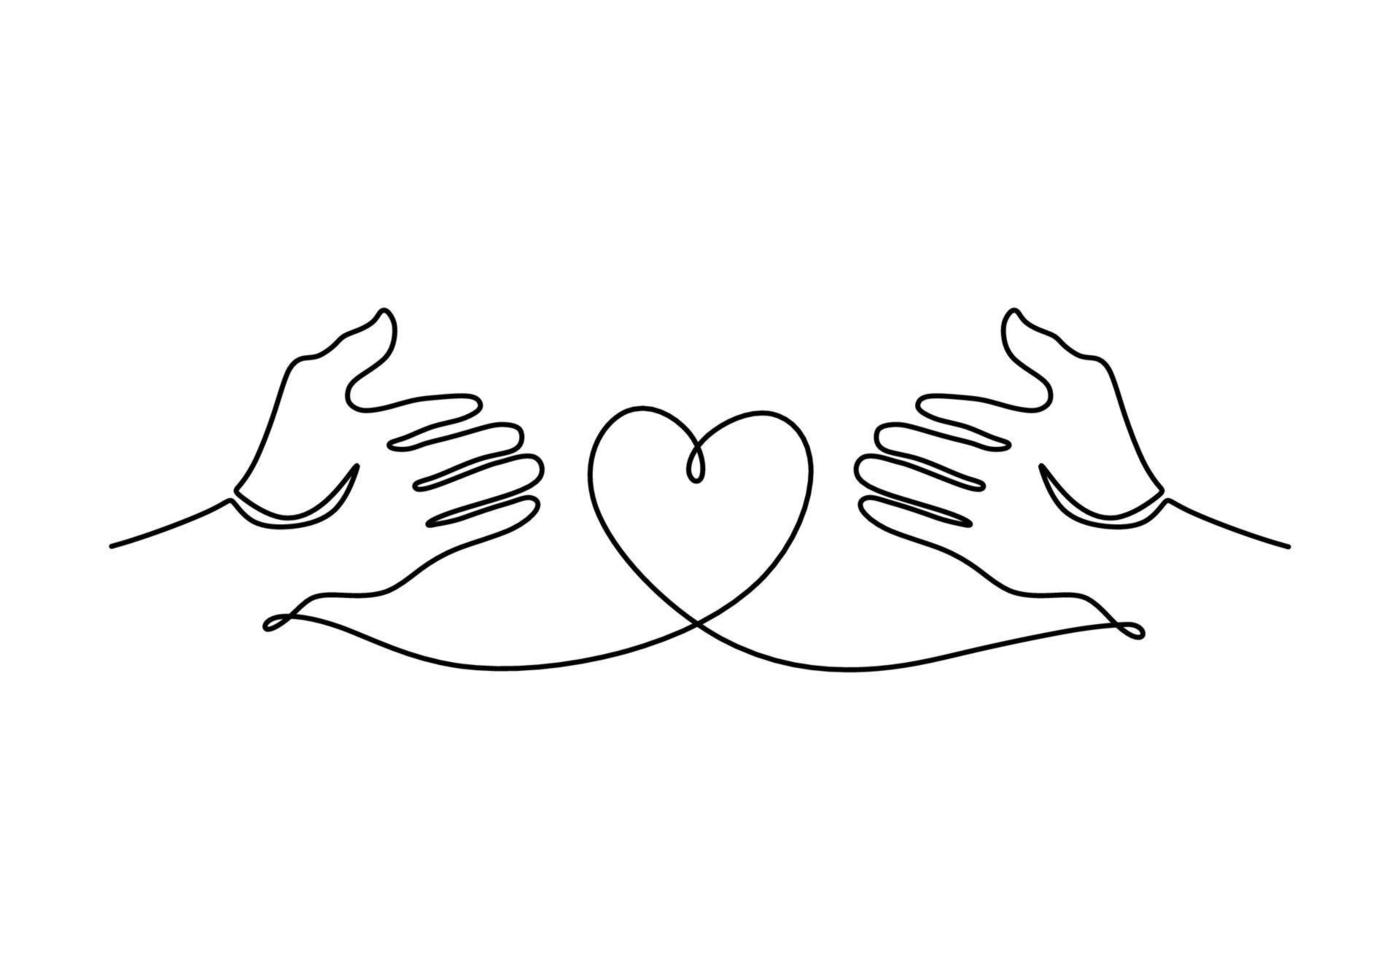 kontinuerlig enkel linje ritning av två öppna händer med hjärtformade vektor